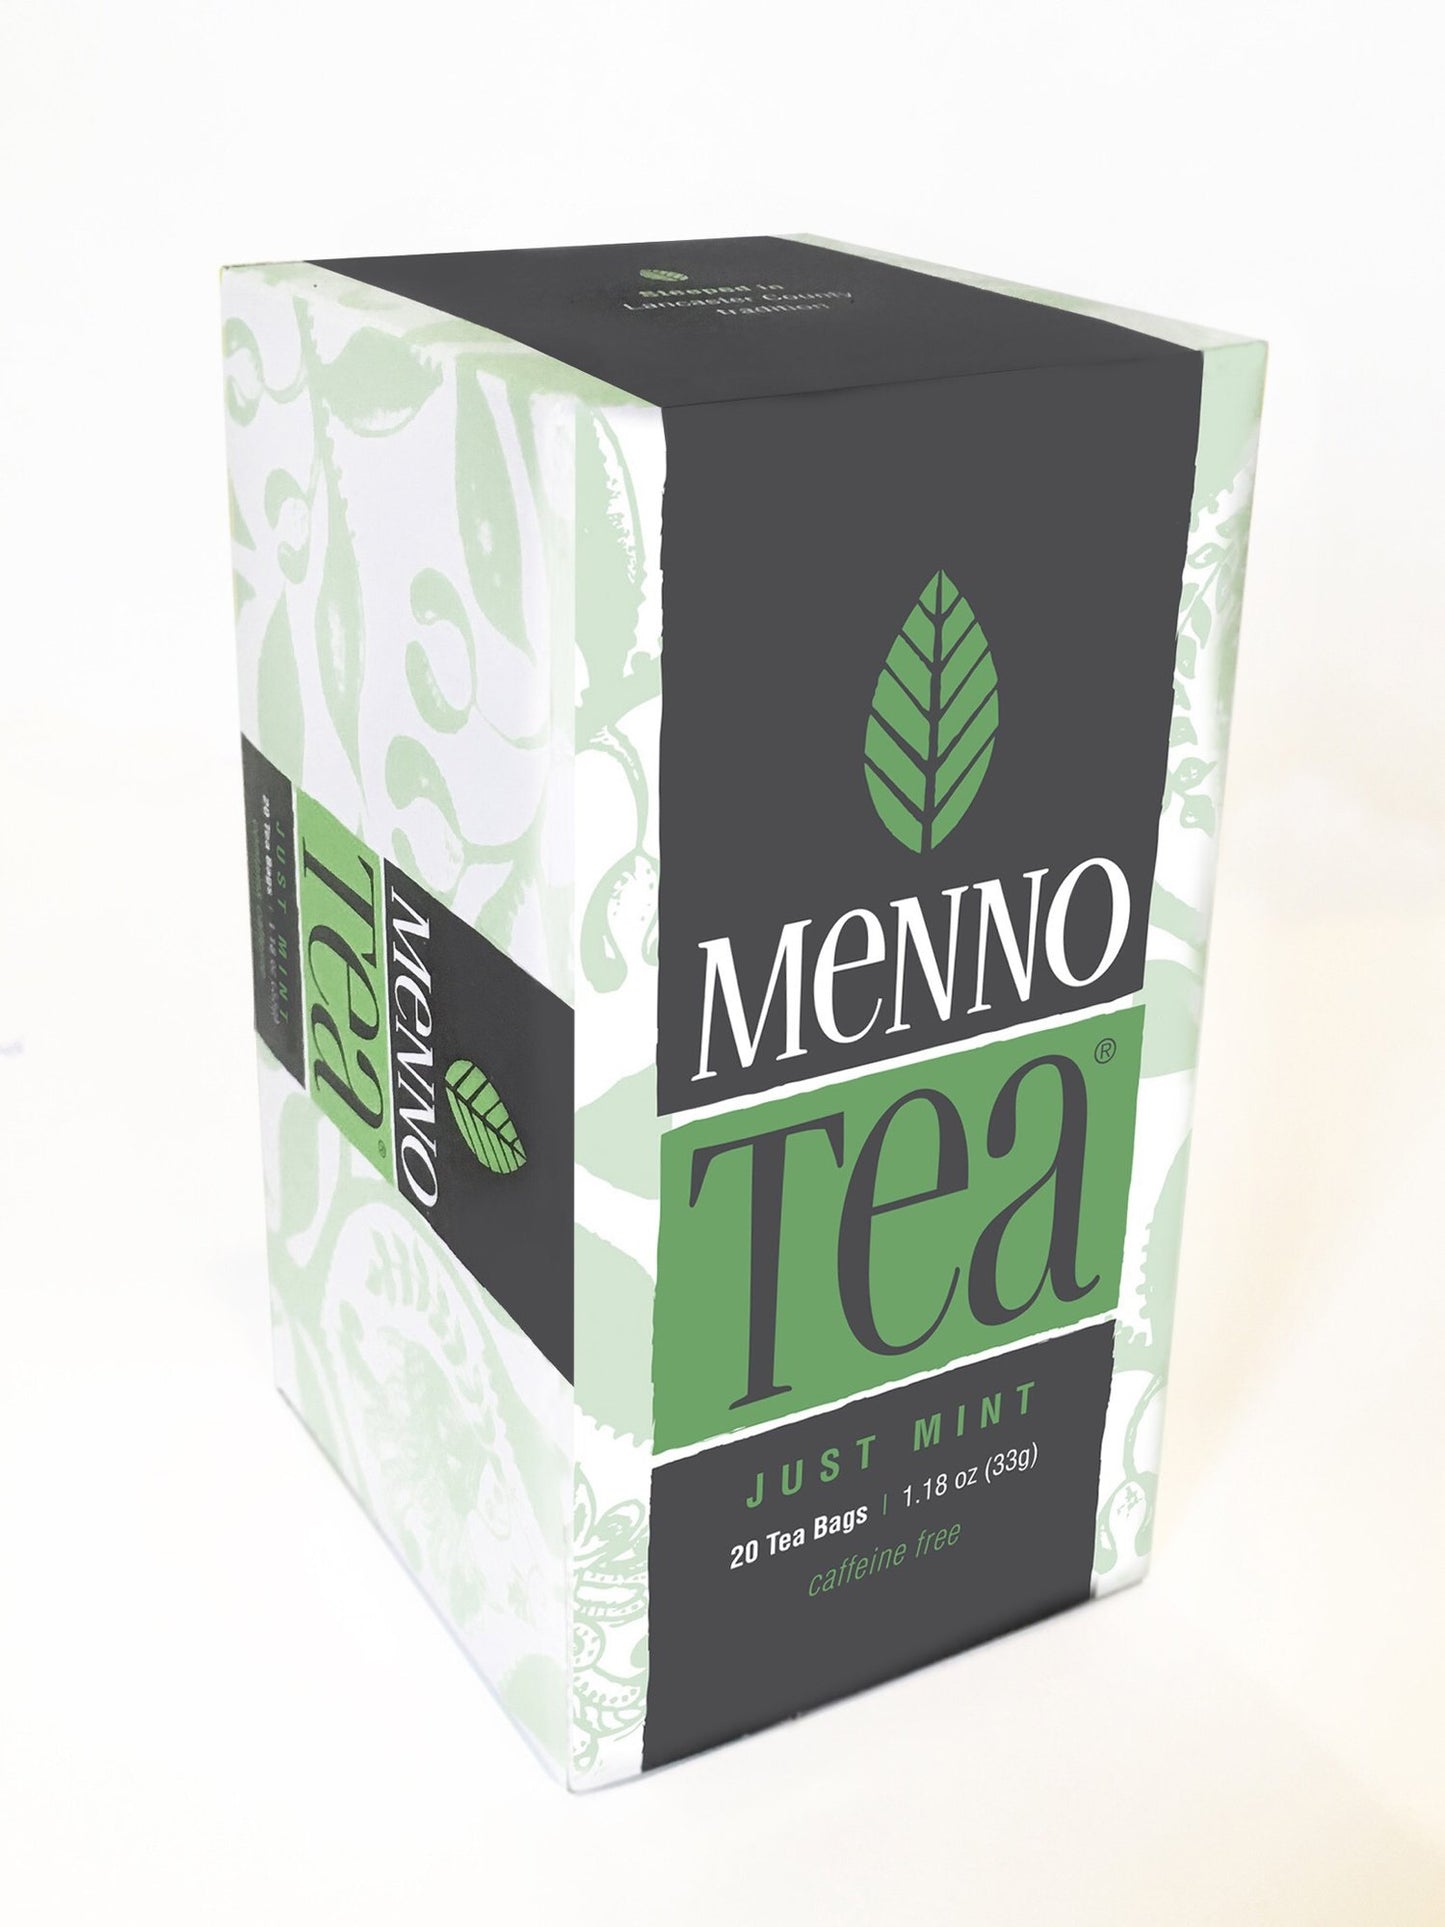 Menno Tea Just Mint (20 Tea Bags) - 1.18oz